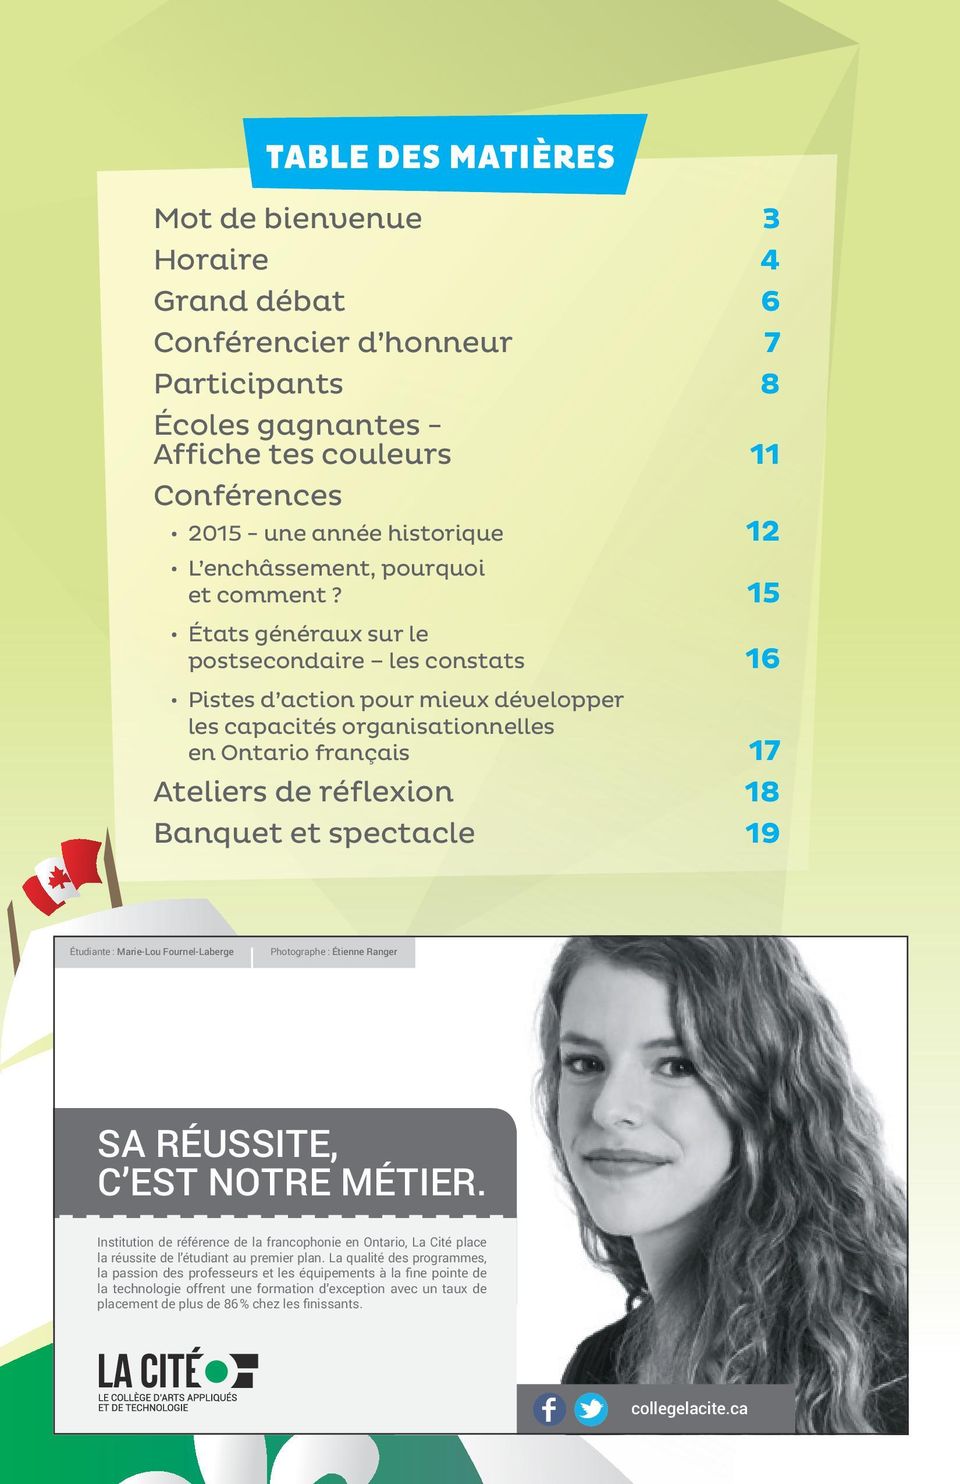 15 États généraux sur le postsecondaire les constats 16 Pistes d action pour mieux développer les capacités organisationnelles en Ontario français 17 Ateliers de réflexion 18 Banquet et spectacle 19